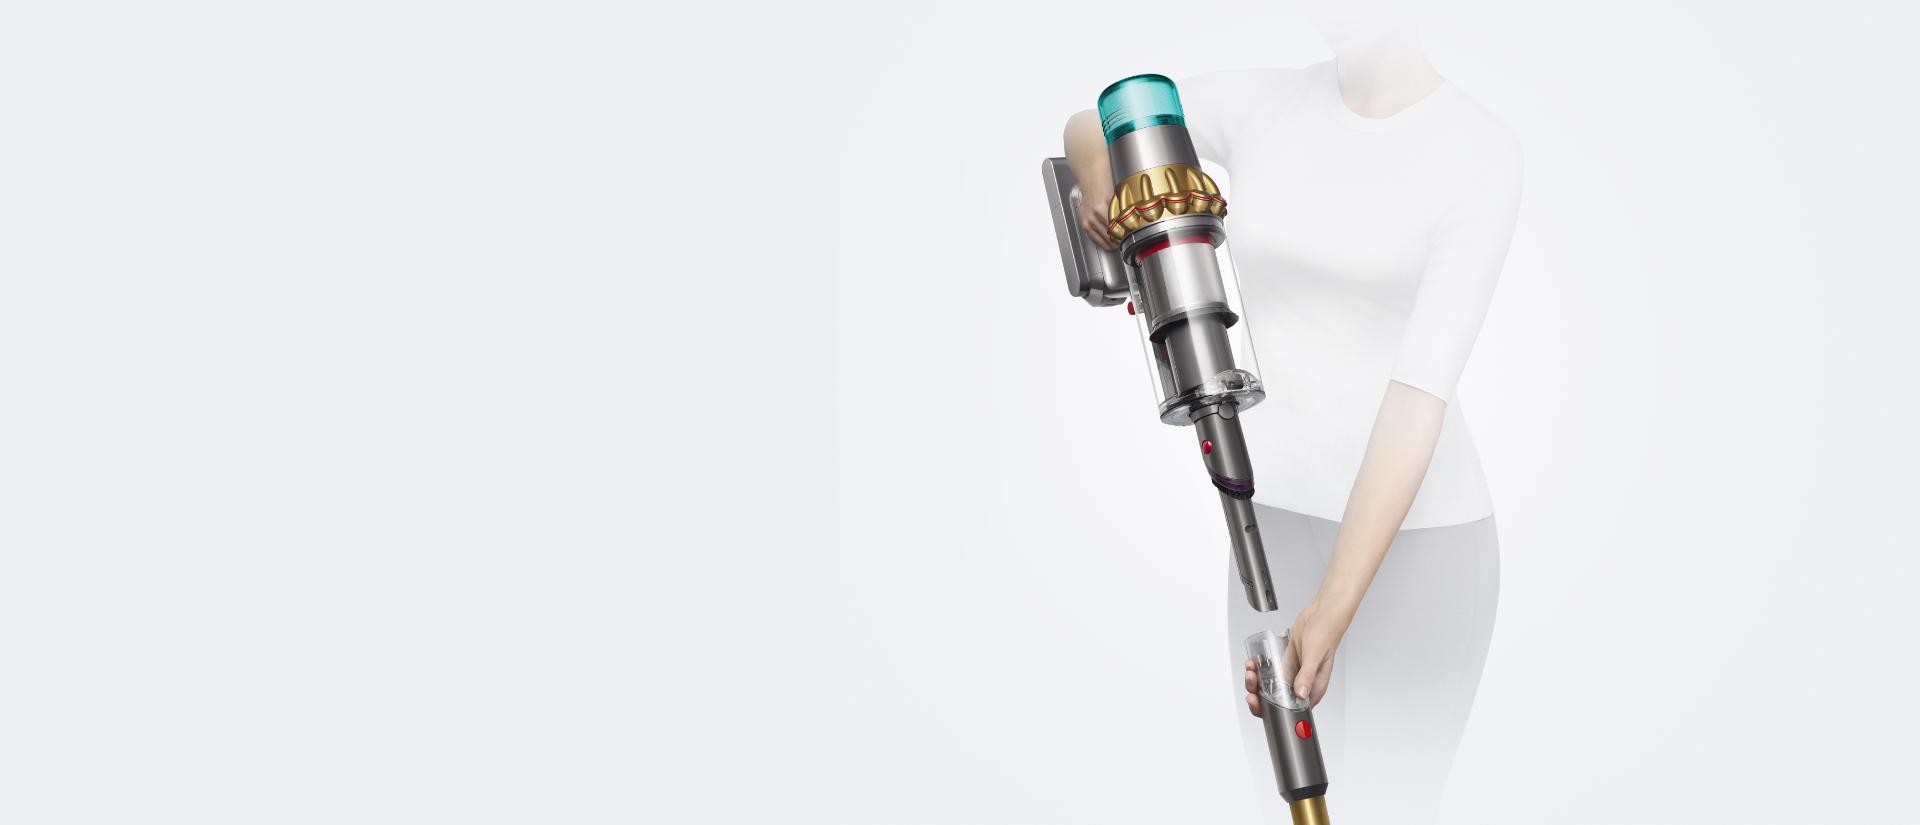 Stick laser vacuum in use during mid vacuum clean